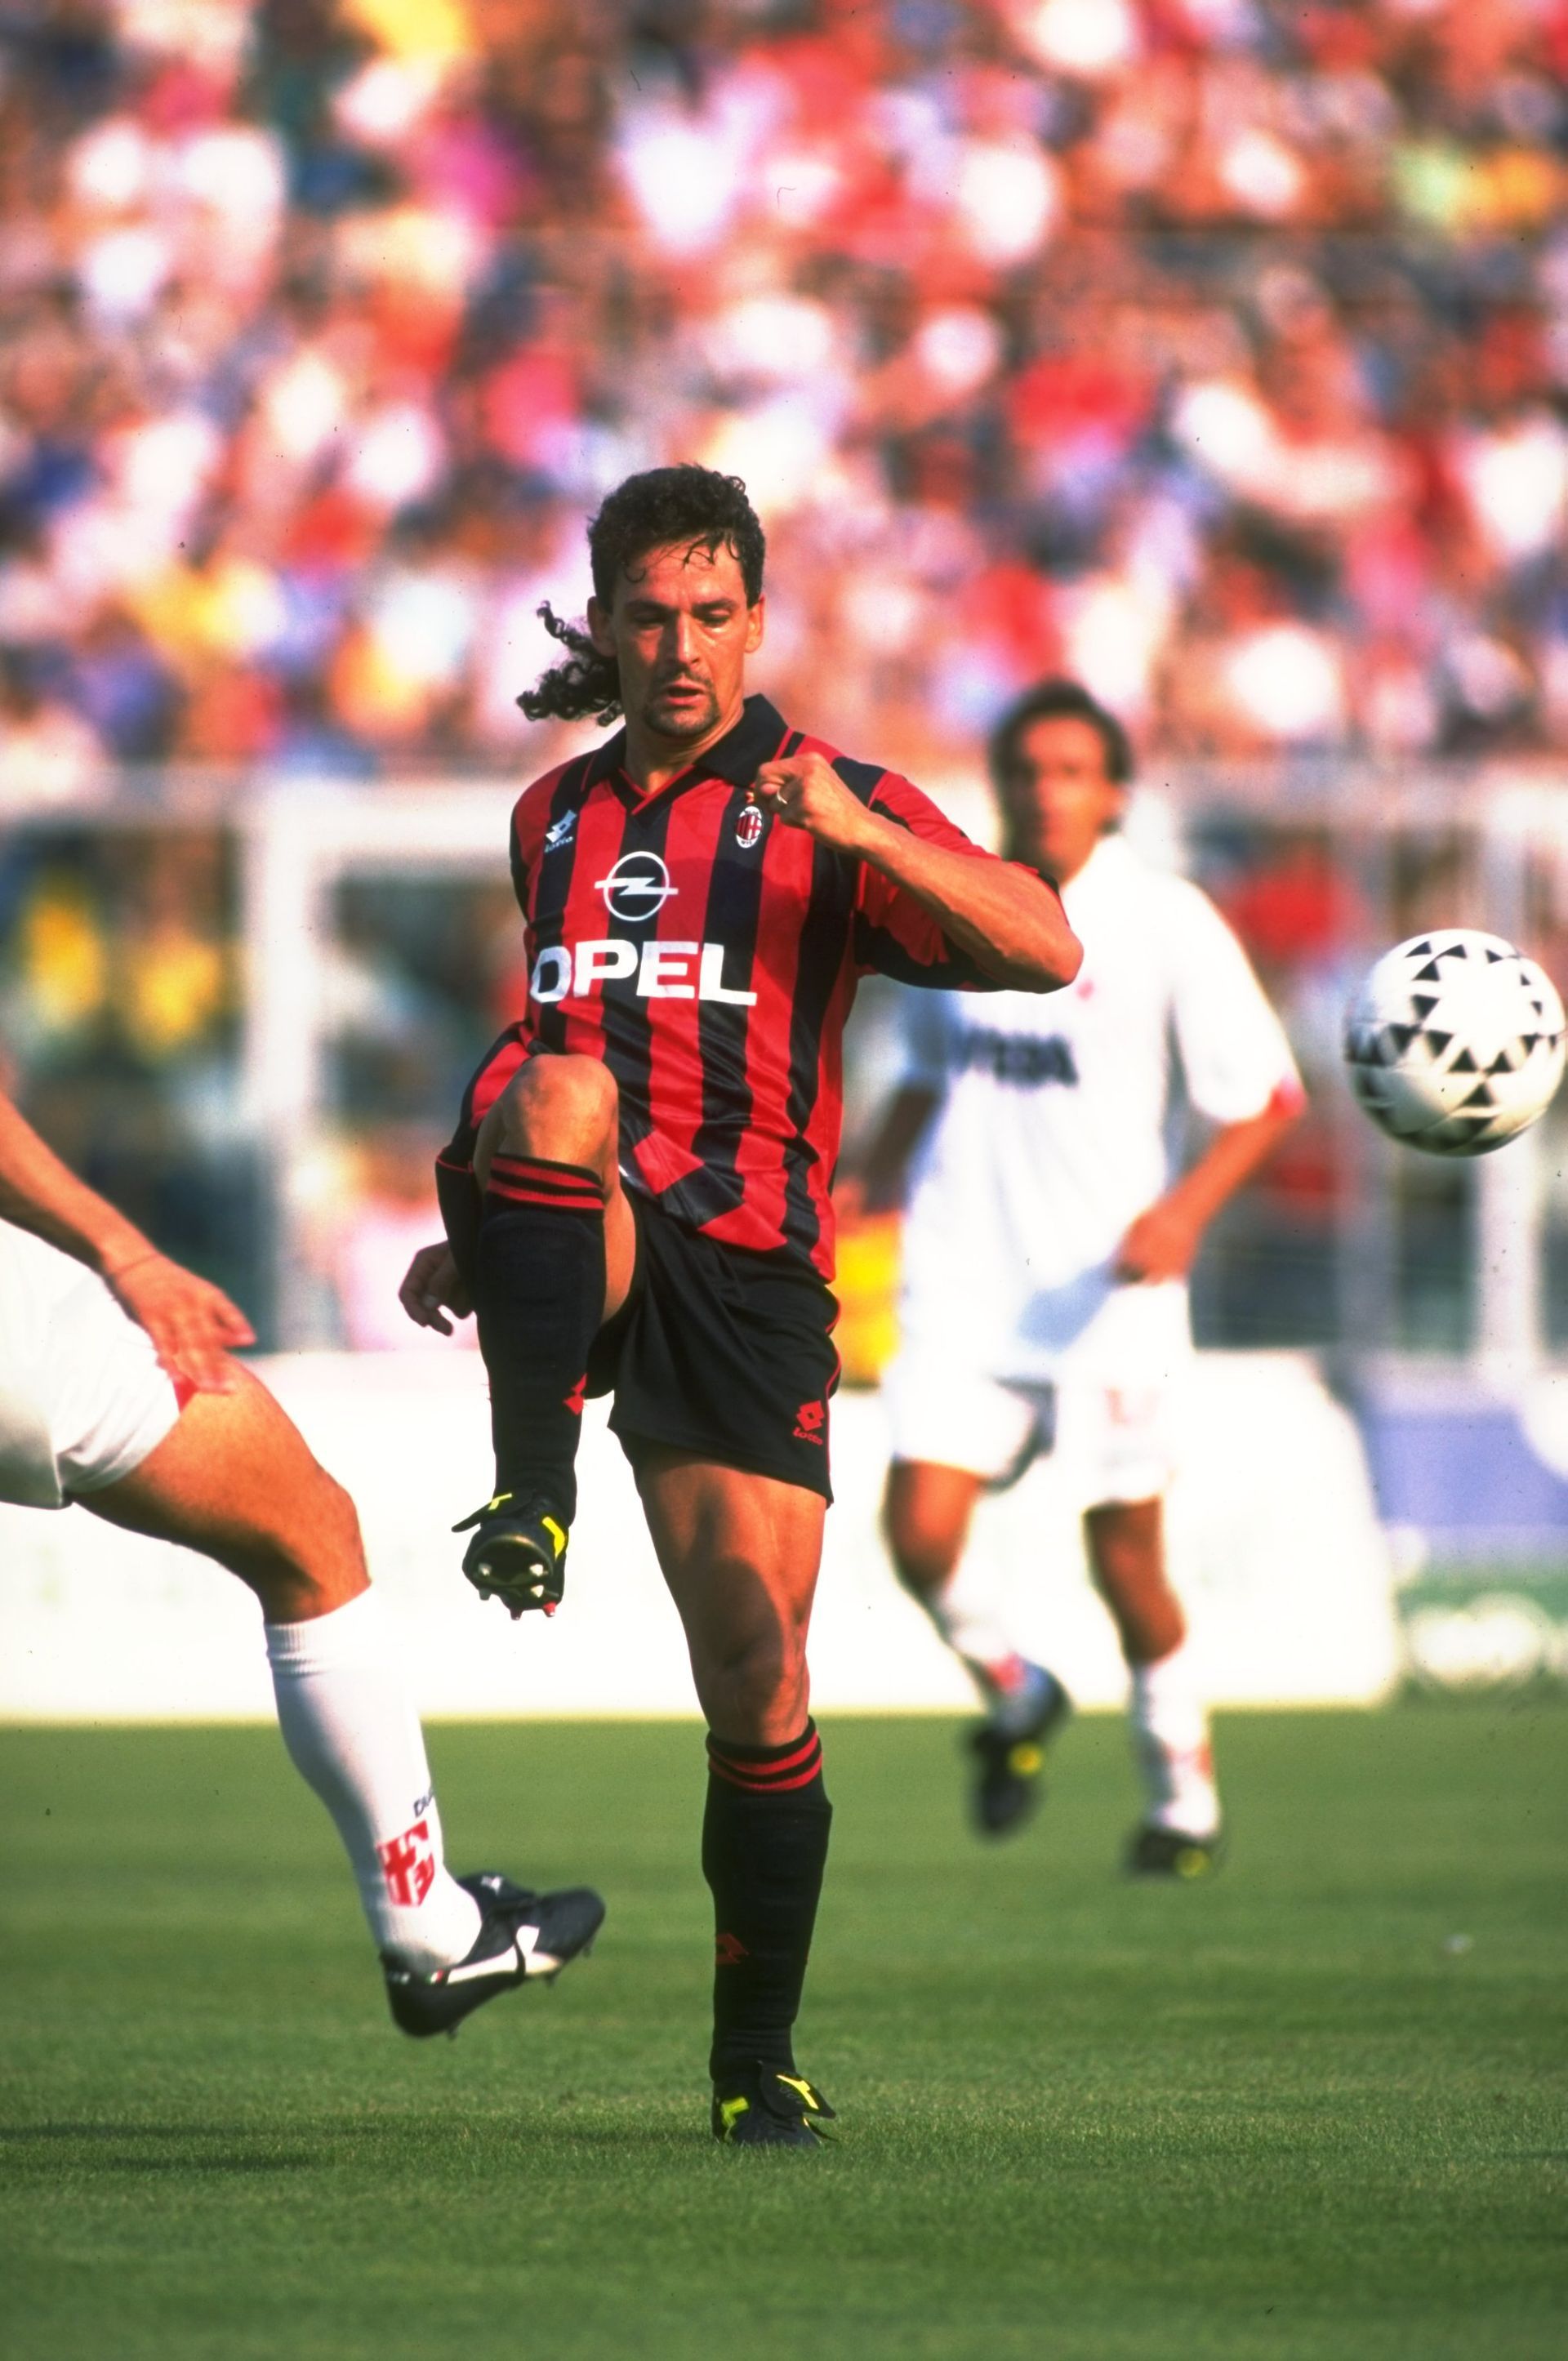 Баджо премина от "Юве" директно в "Милан", където за два сезона отново стана шампион, а в 67 мача заби 15 попадения, играейки като плеймейкър, по-далеч от вратата. А и стигайки до роля на резерва в определени момент, в претъпкания с класа тим на "червено-черните".